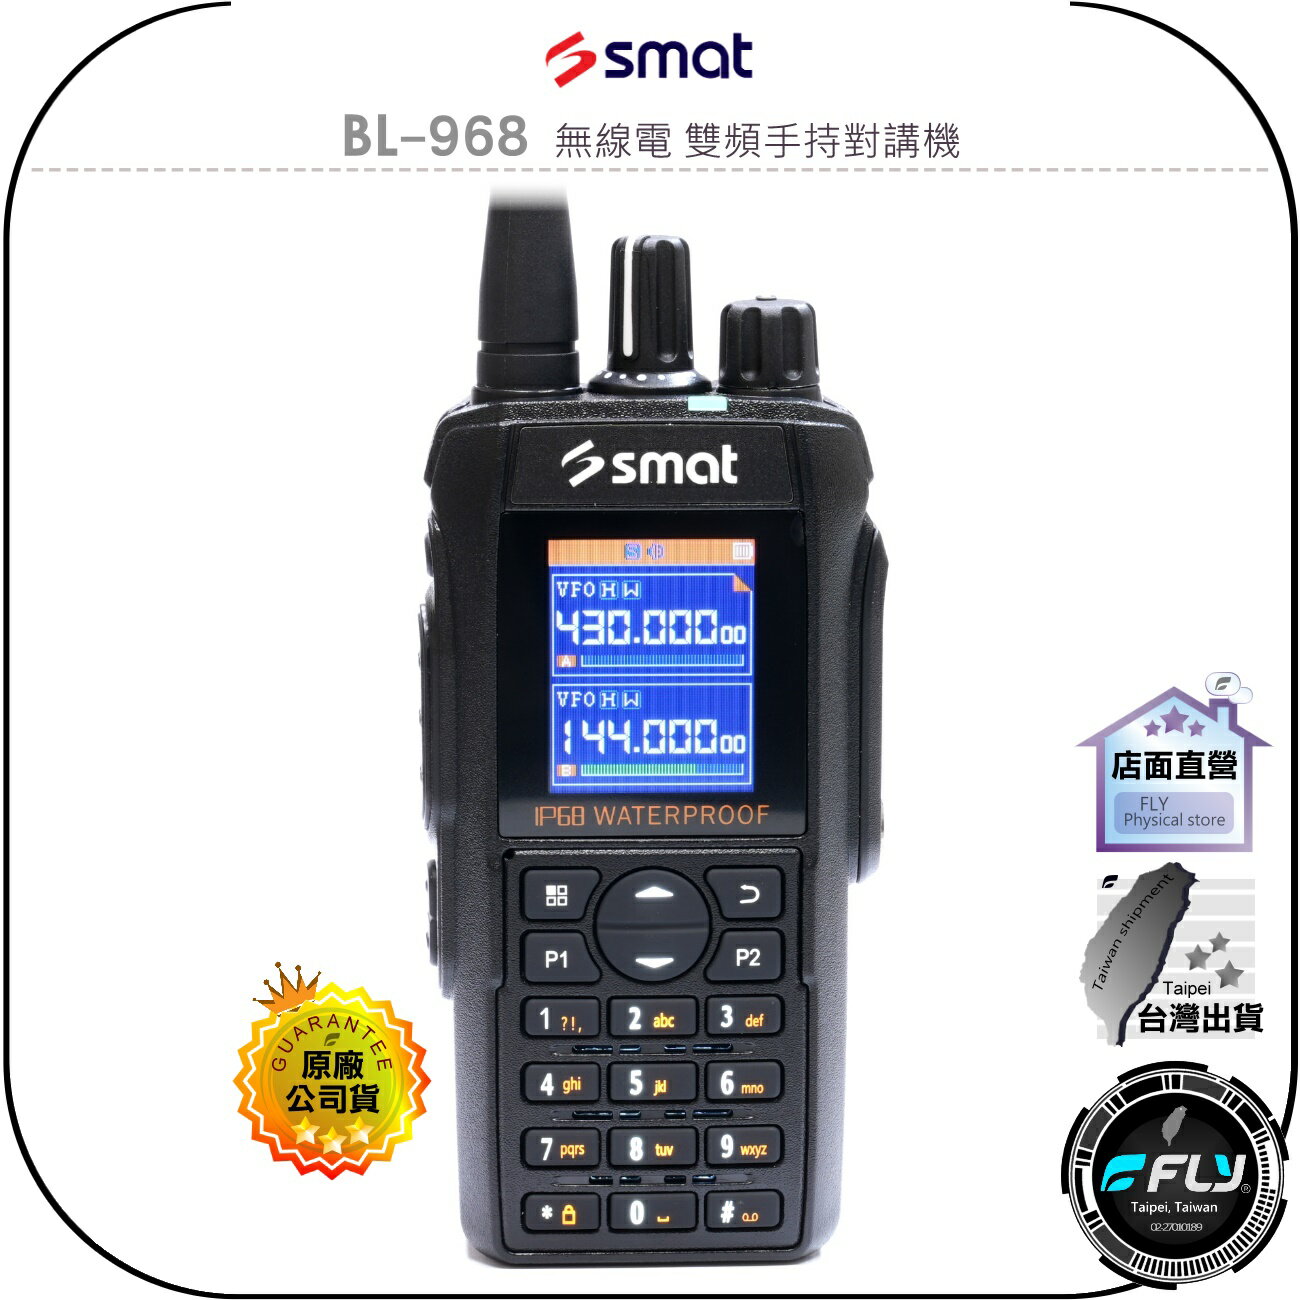 【飛翔商城】SMAT BL-968 無線電 雙頻手持對講機◉公司貨◉IP68防水◉12W大功率◉航空接收◉中文介面